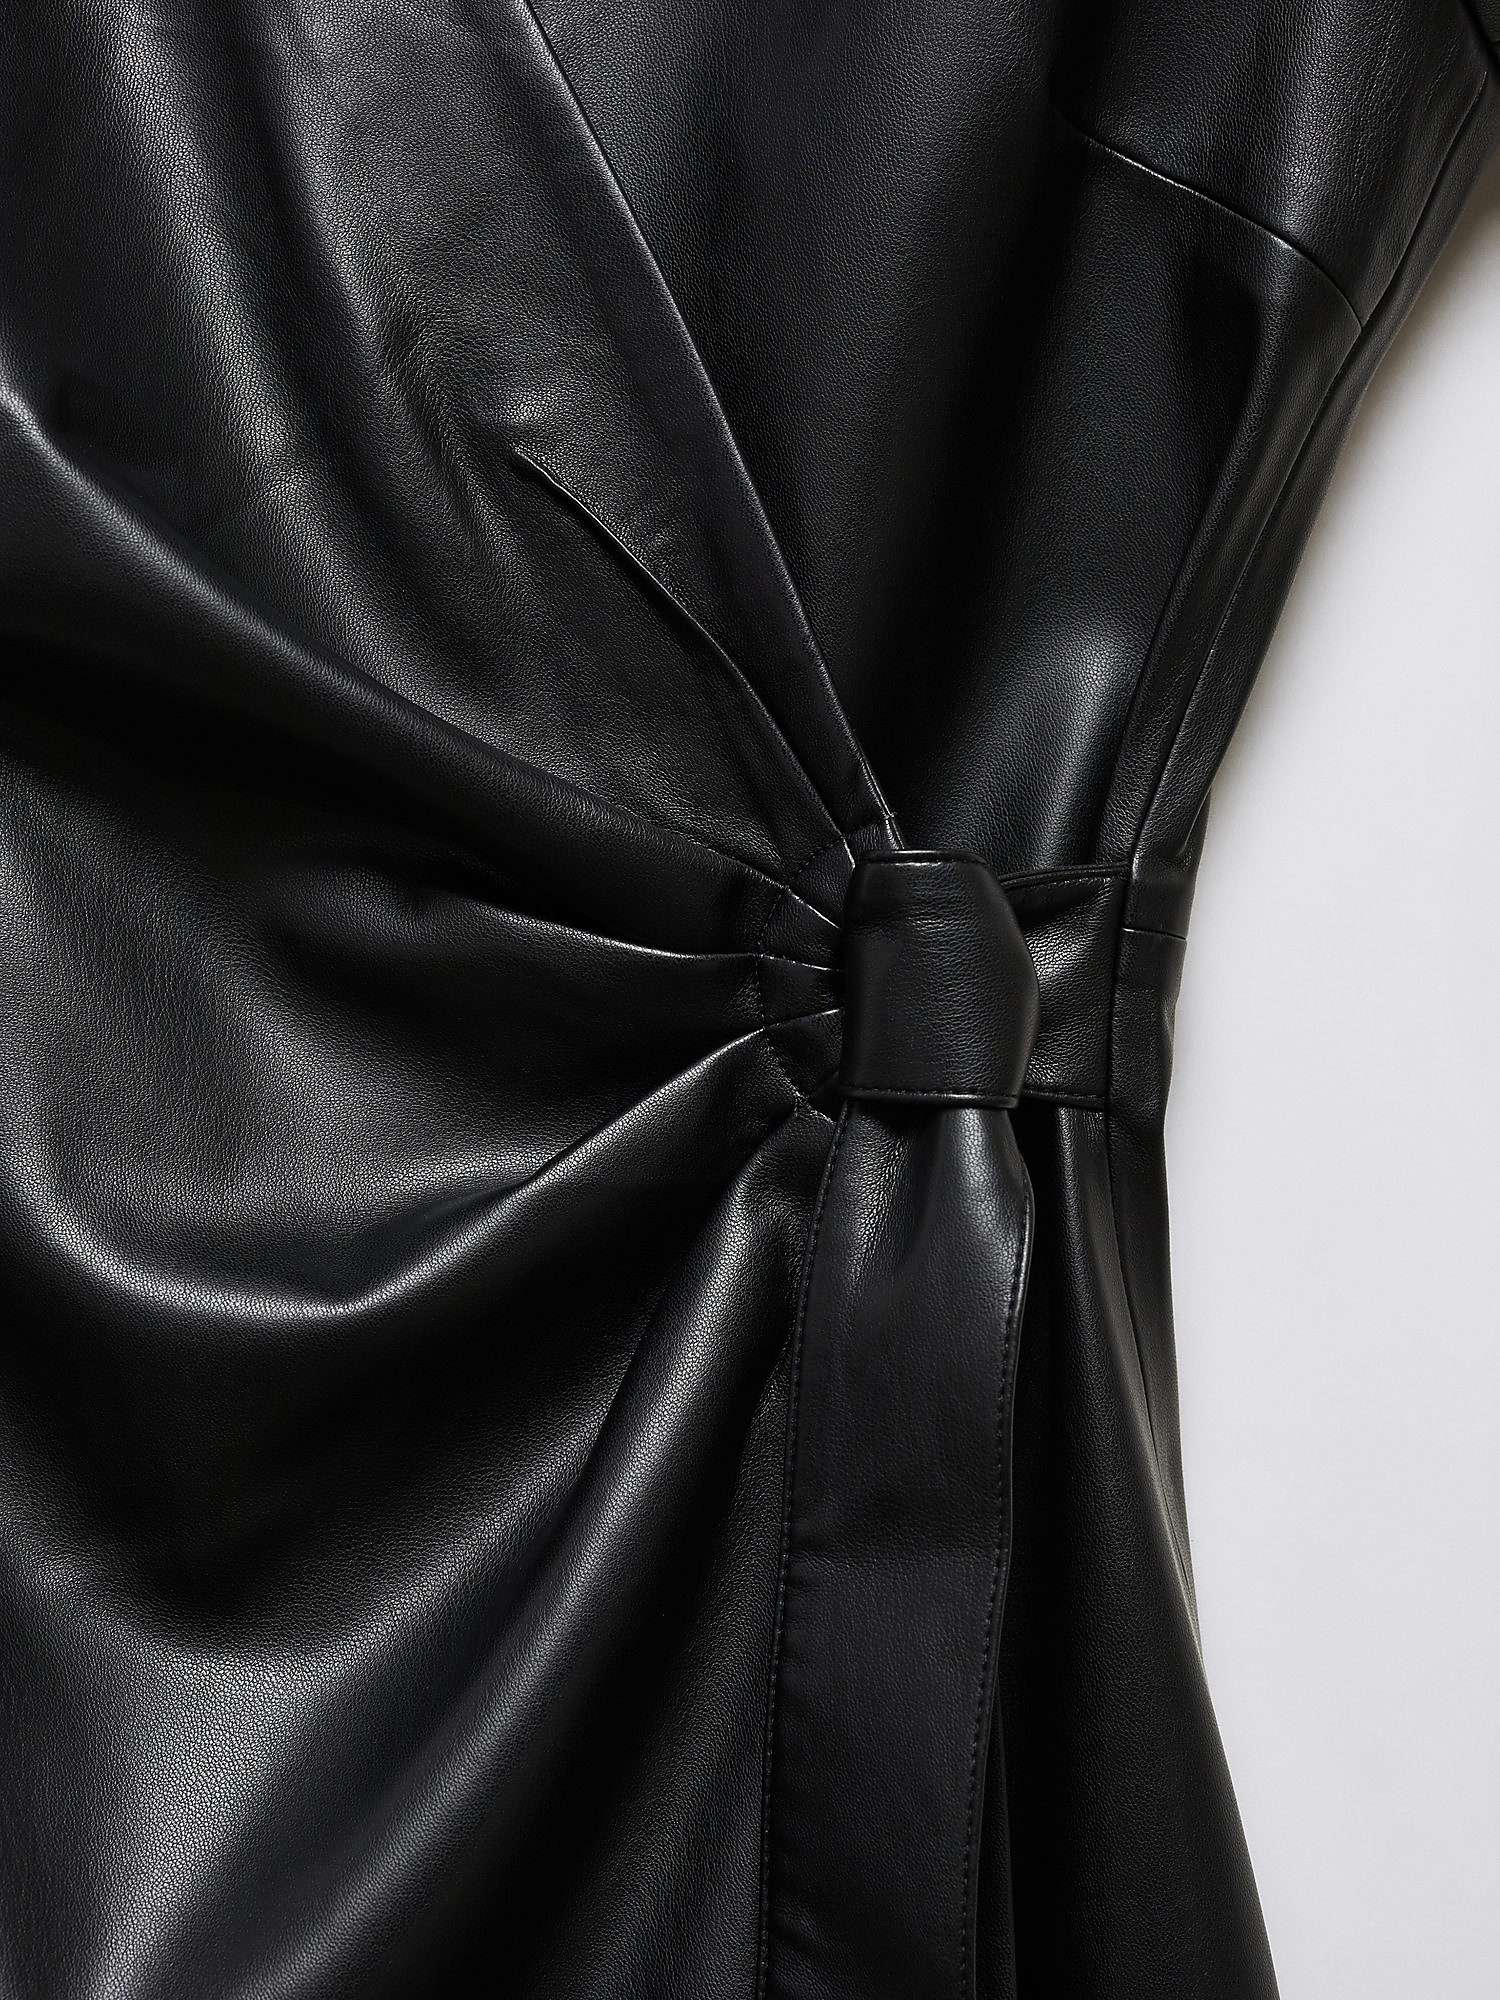 Mango Emily Wrap Mini Dress, Black at John Lewis & Partners